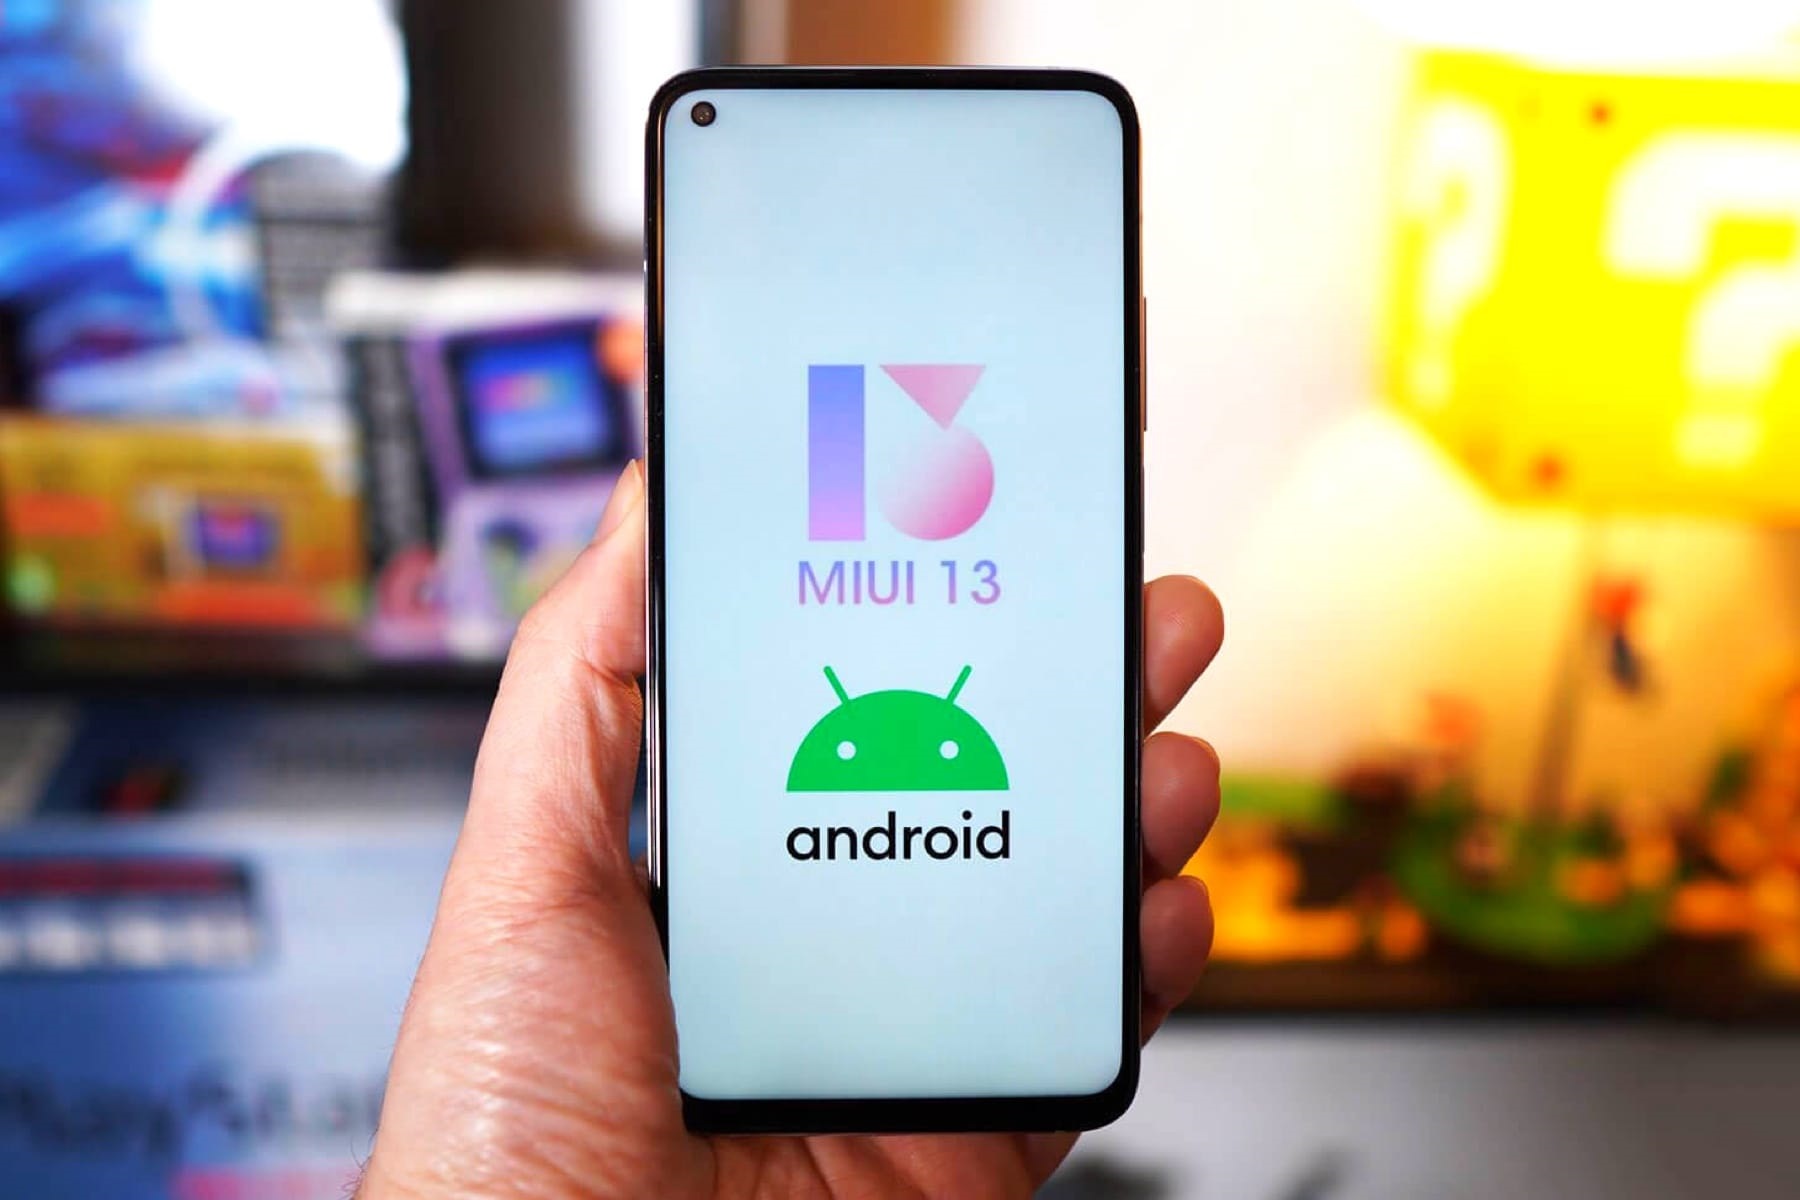 Xiaomi відкладає випуск прошивки MIUI 13 на невизначений термін